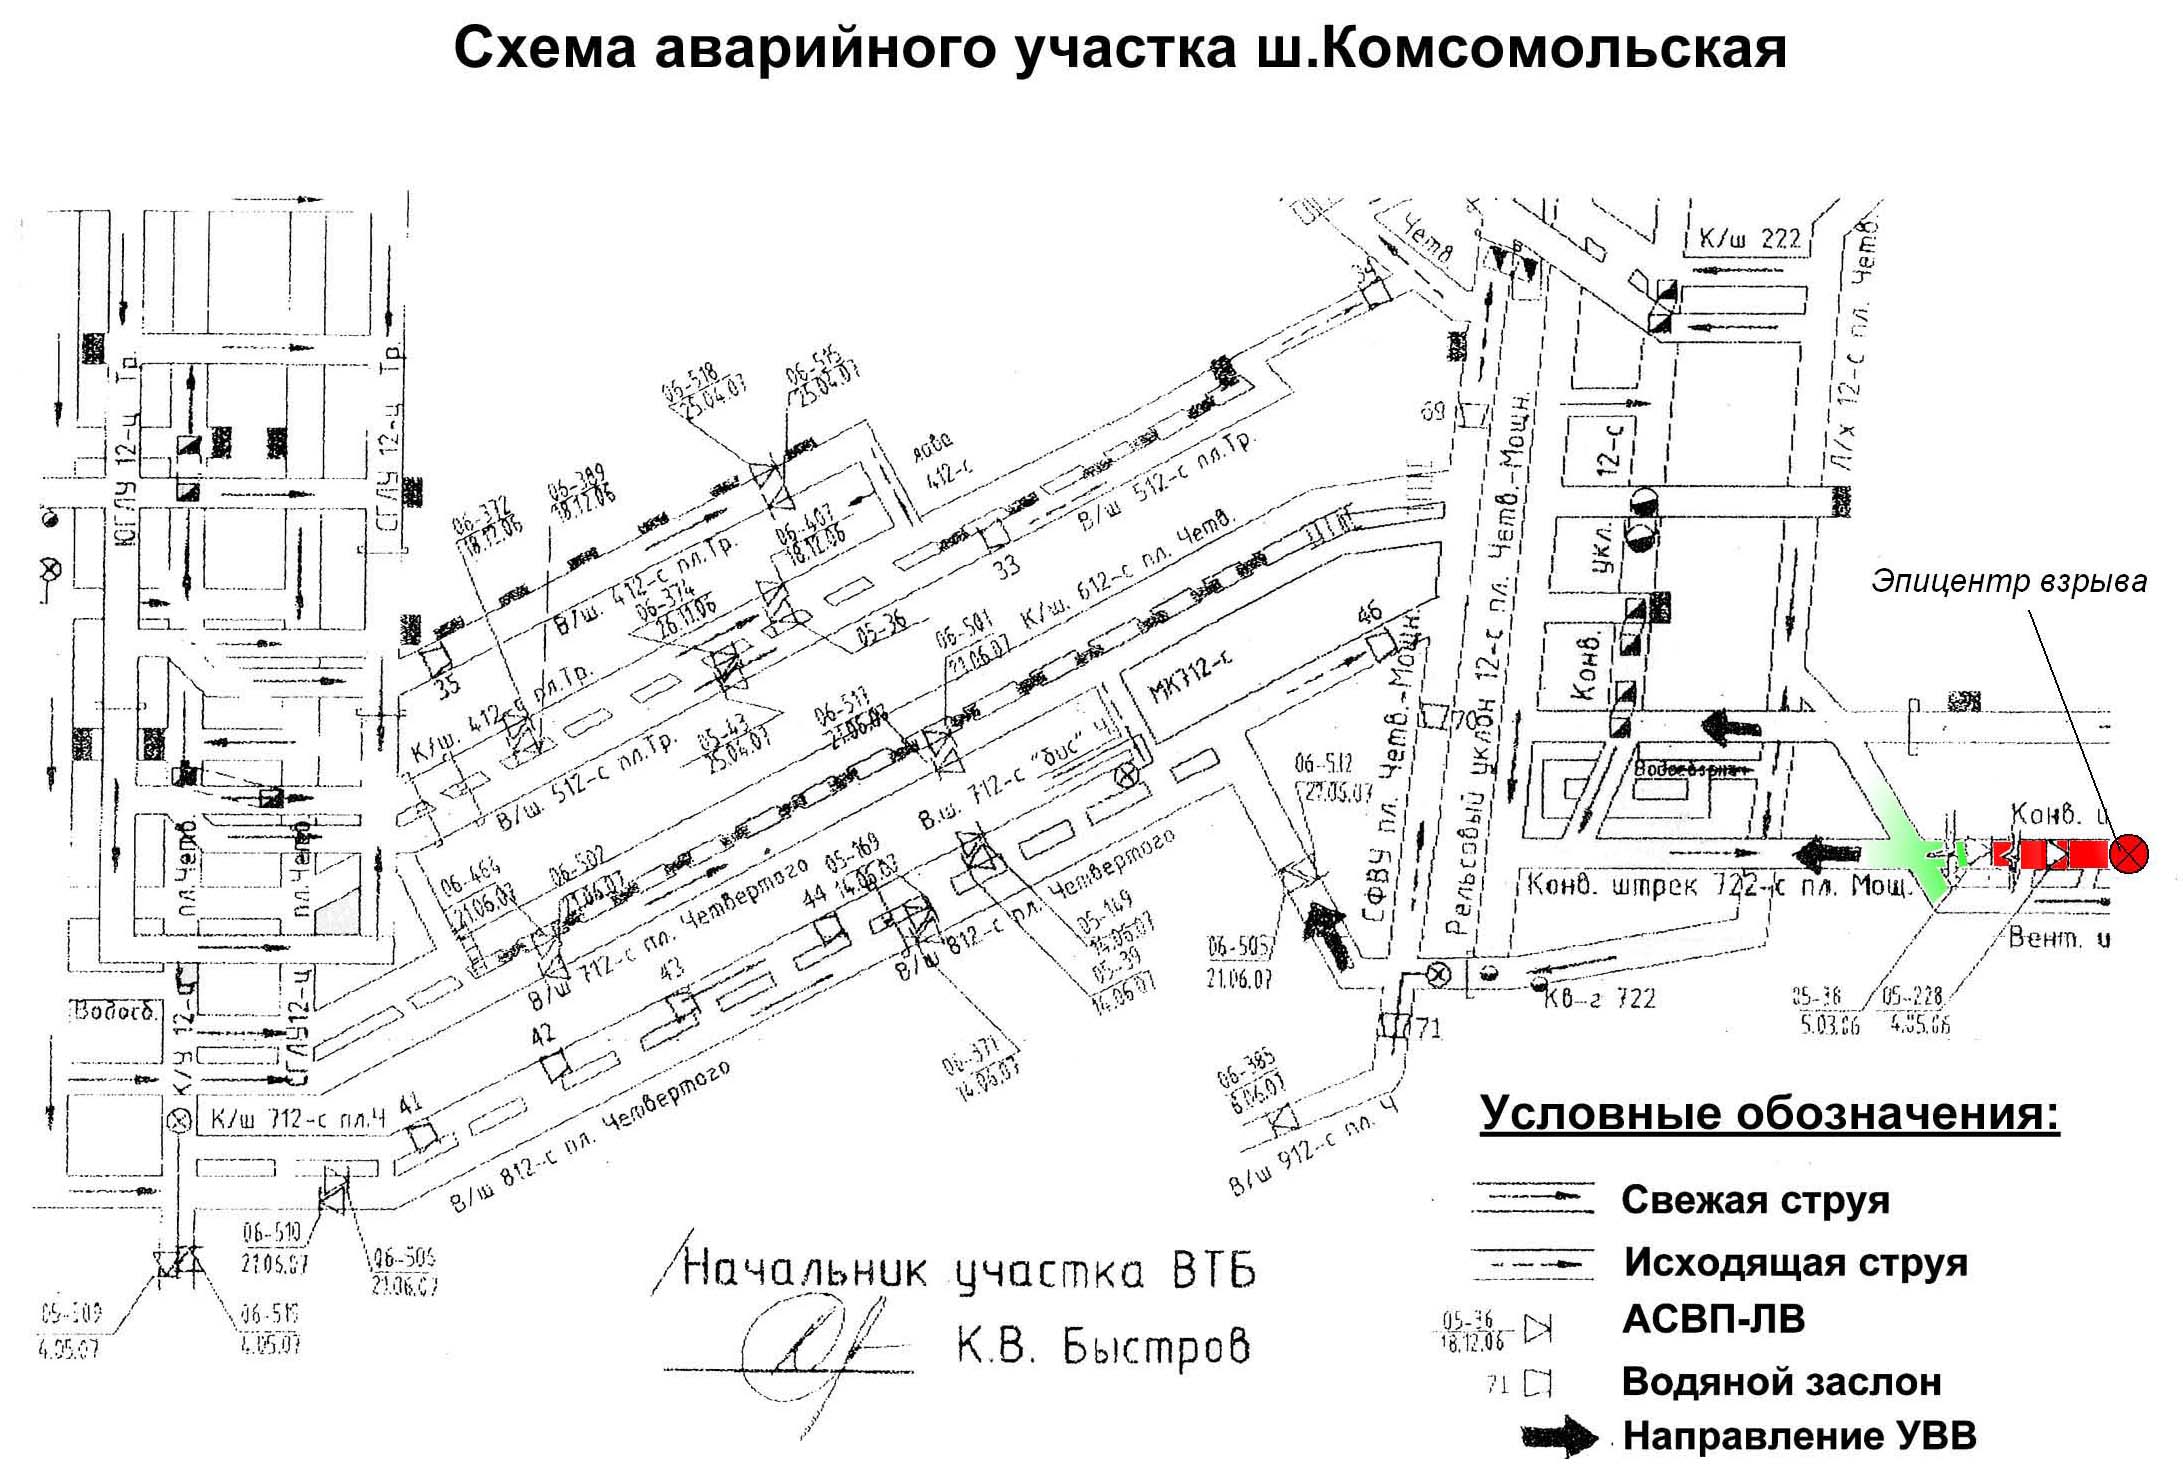 Схема аварийного участка шахты Комсомольская